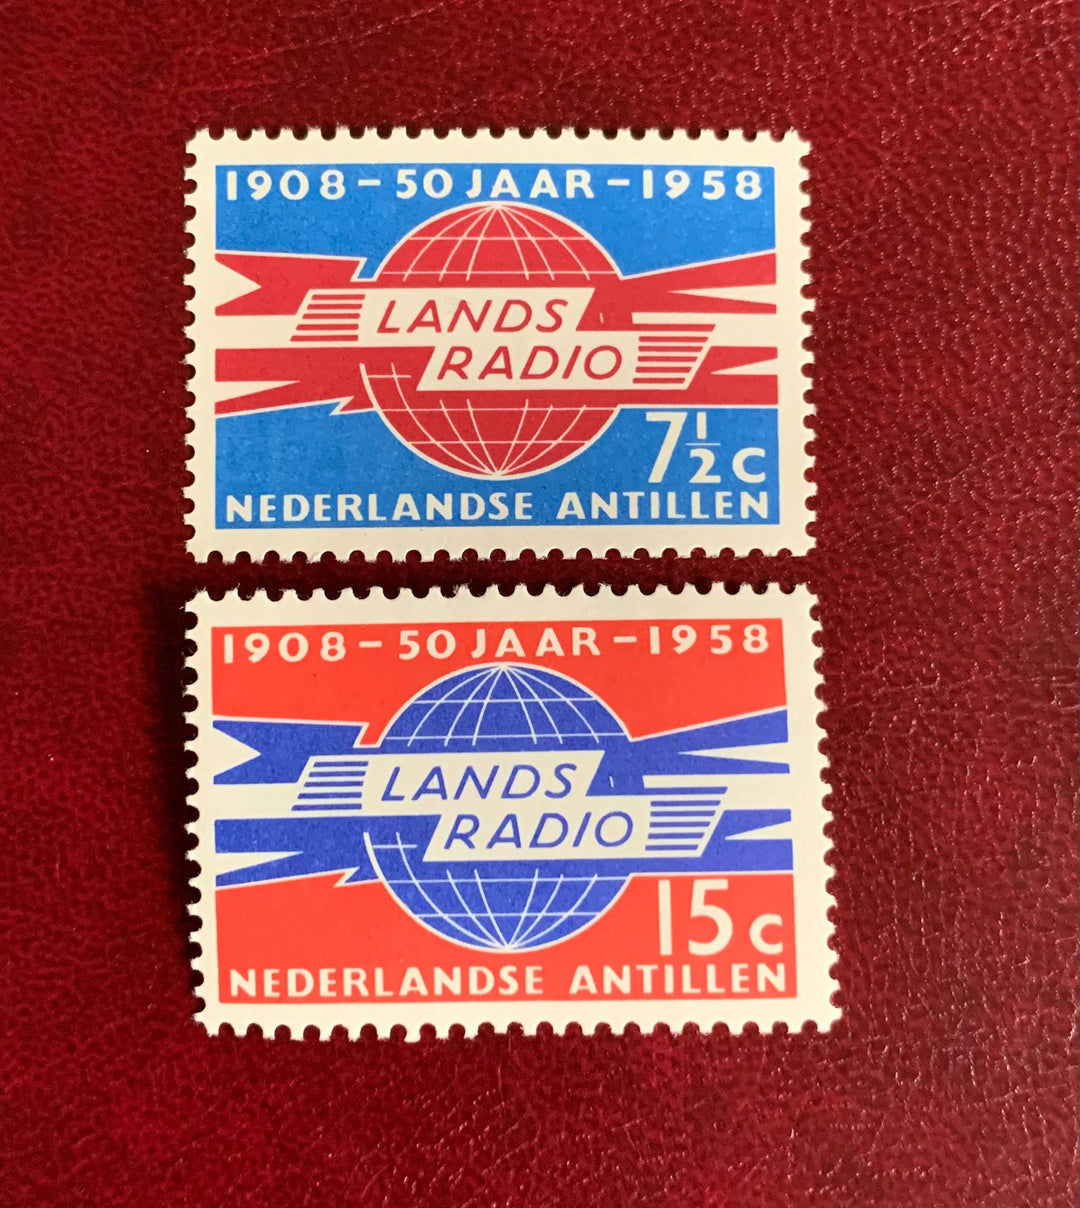 Netherlands Antilles- Original Vintage Postage Stamps-1958 Radio